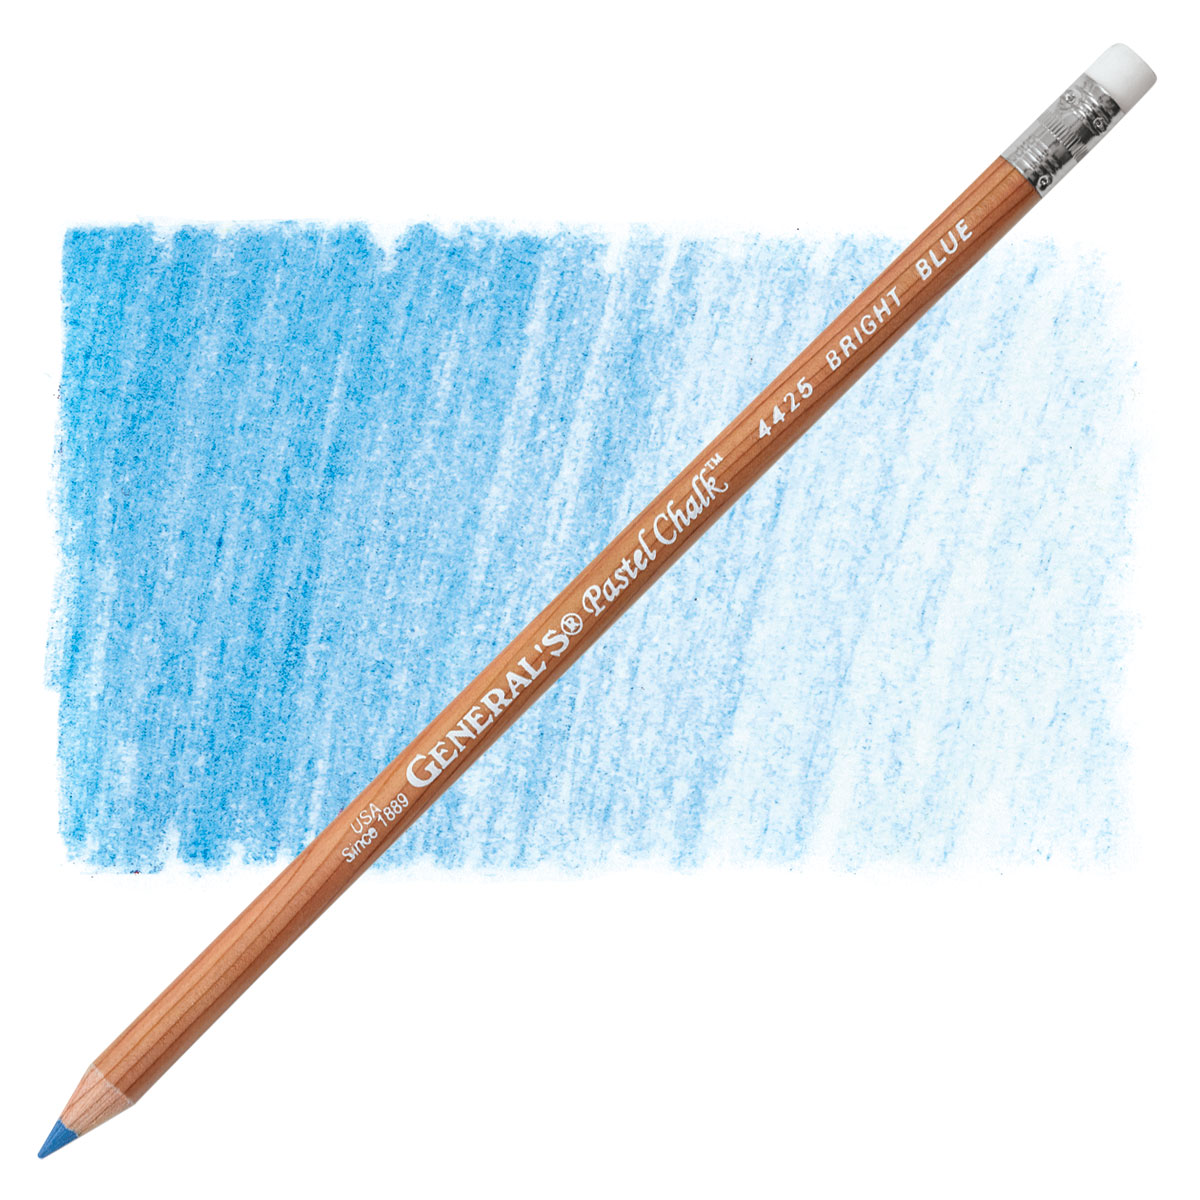 White Pastel Chalk Pencils | General's Pencil #4414-2BP